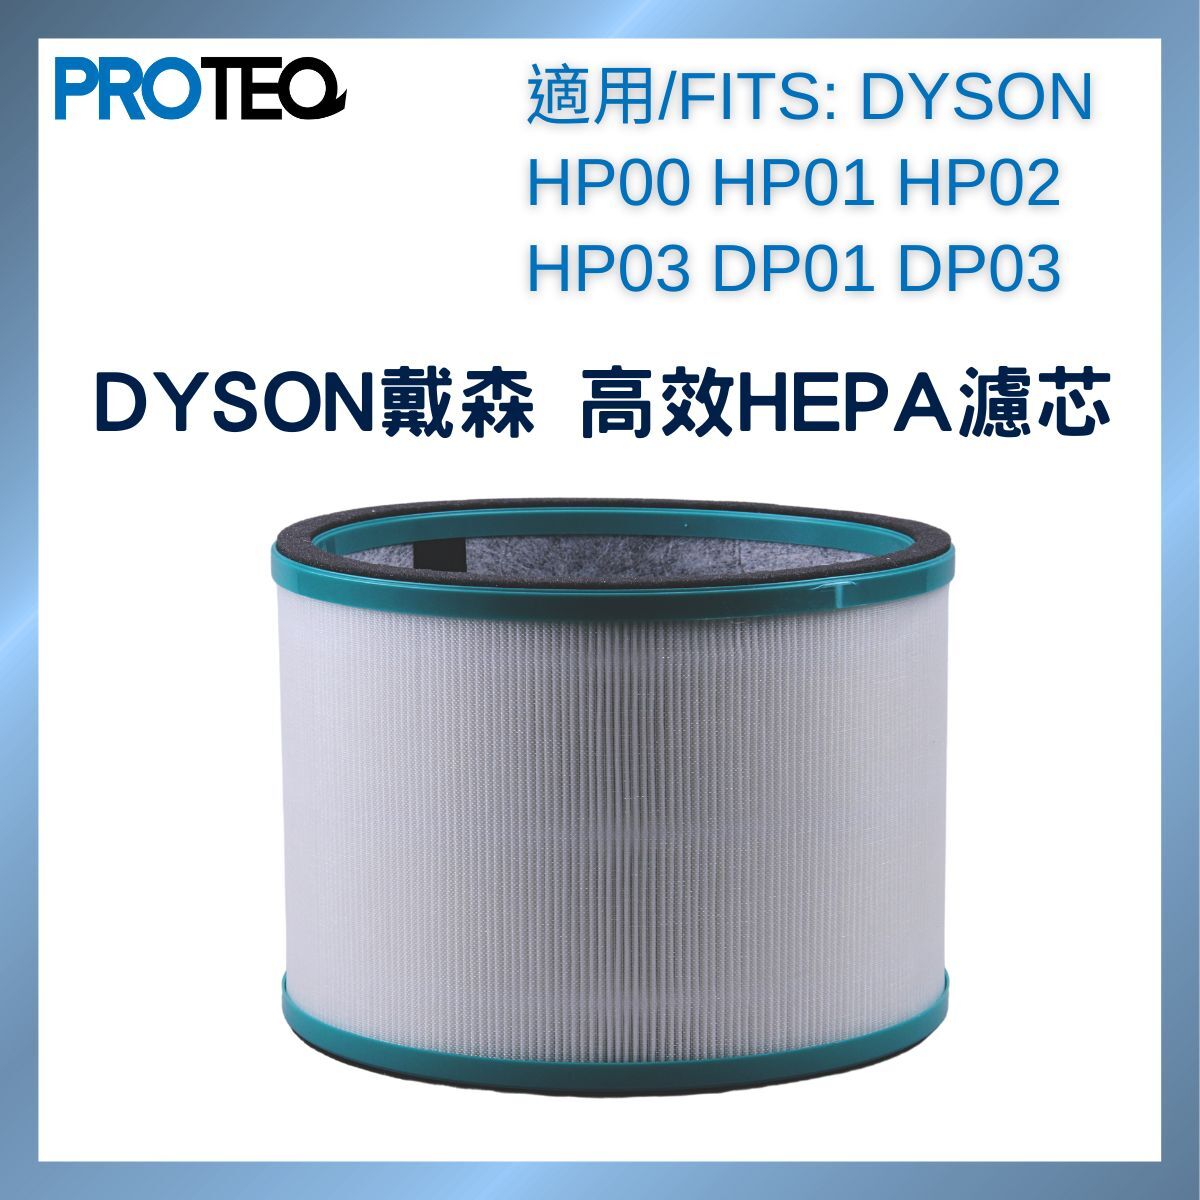 DYSON空氣清新機HP00 HP01 HP02 HP03 DP01 DP03 高效HEPA過濾器代用濾芯套裝